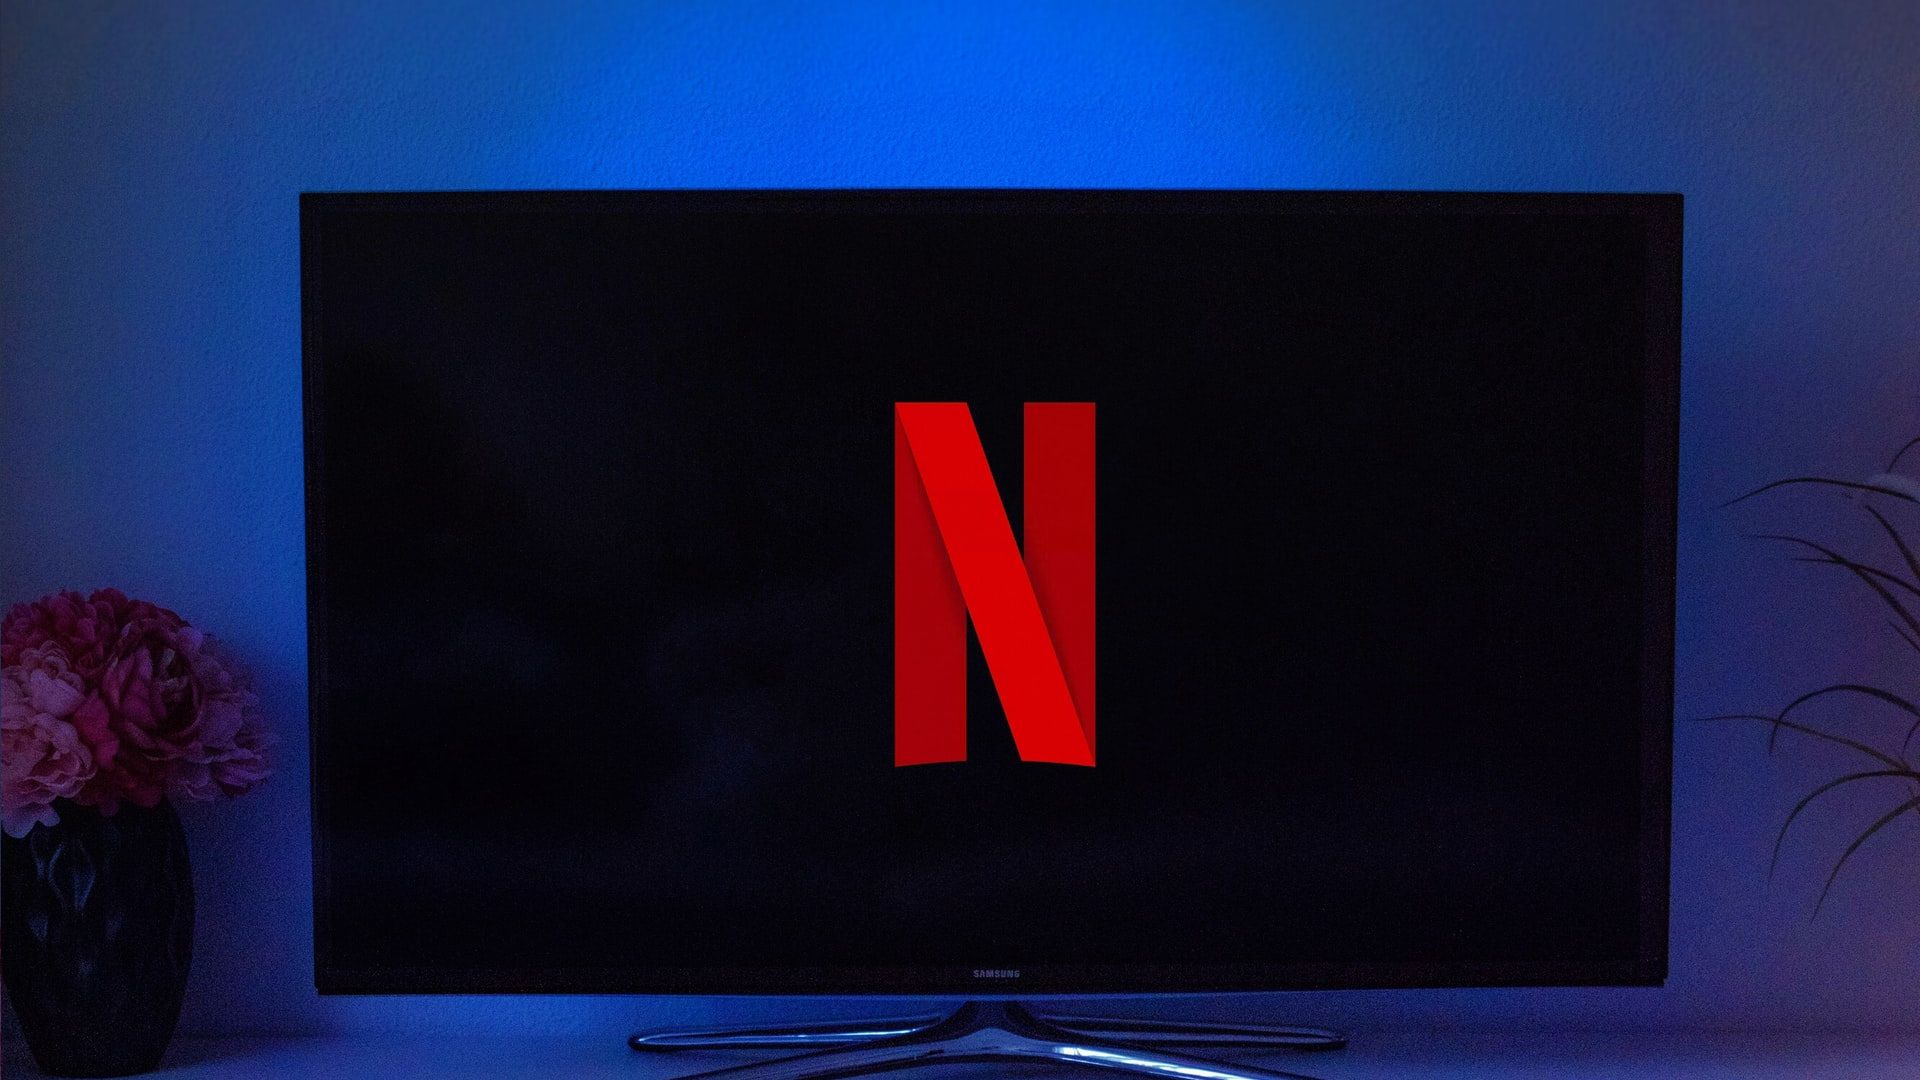 Netflix: opções de reprodução automática, player HTML5